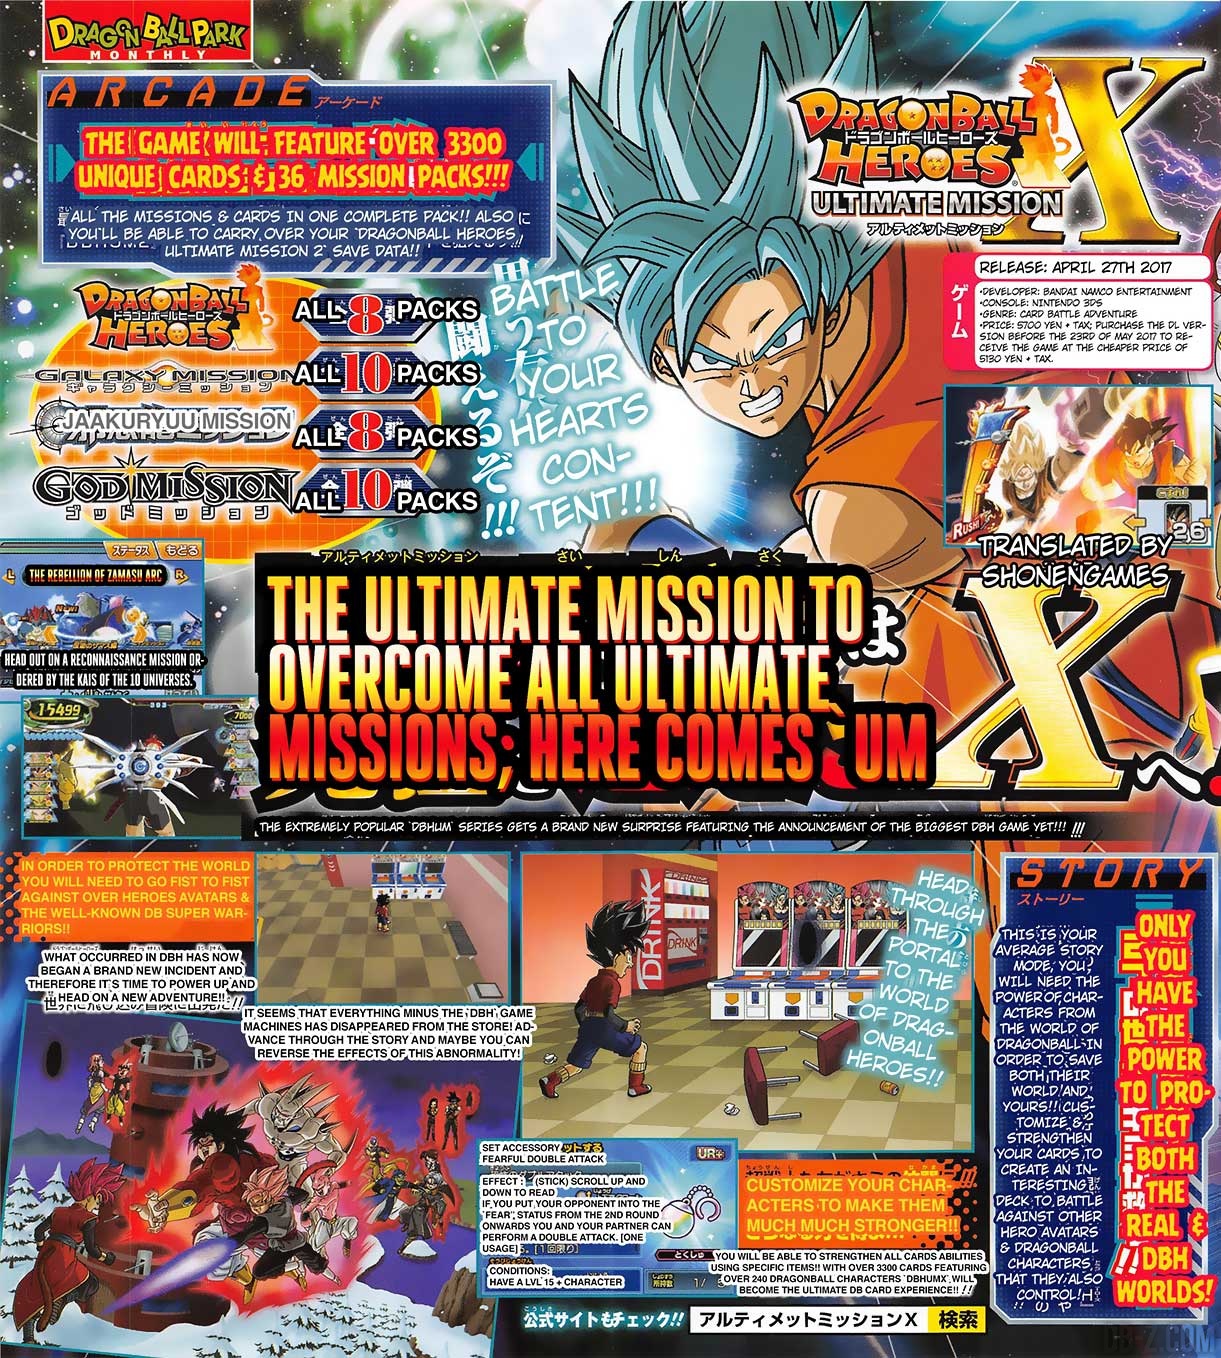 Dragon Ball Heroes Ultimate Mission X (3DS) enfin annoncé ! – Dragon Ball  Super en France : Actualités & News